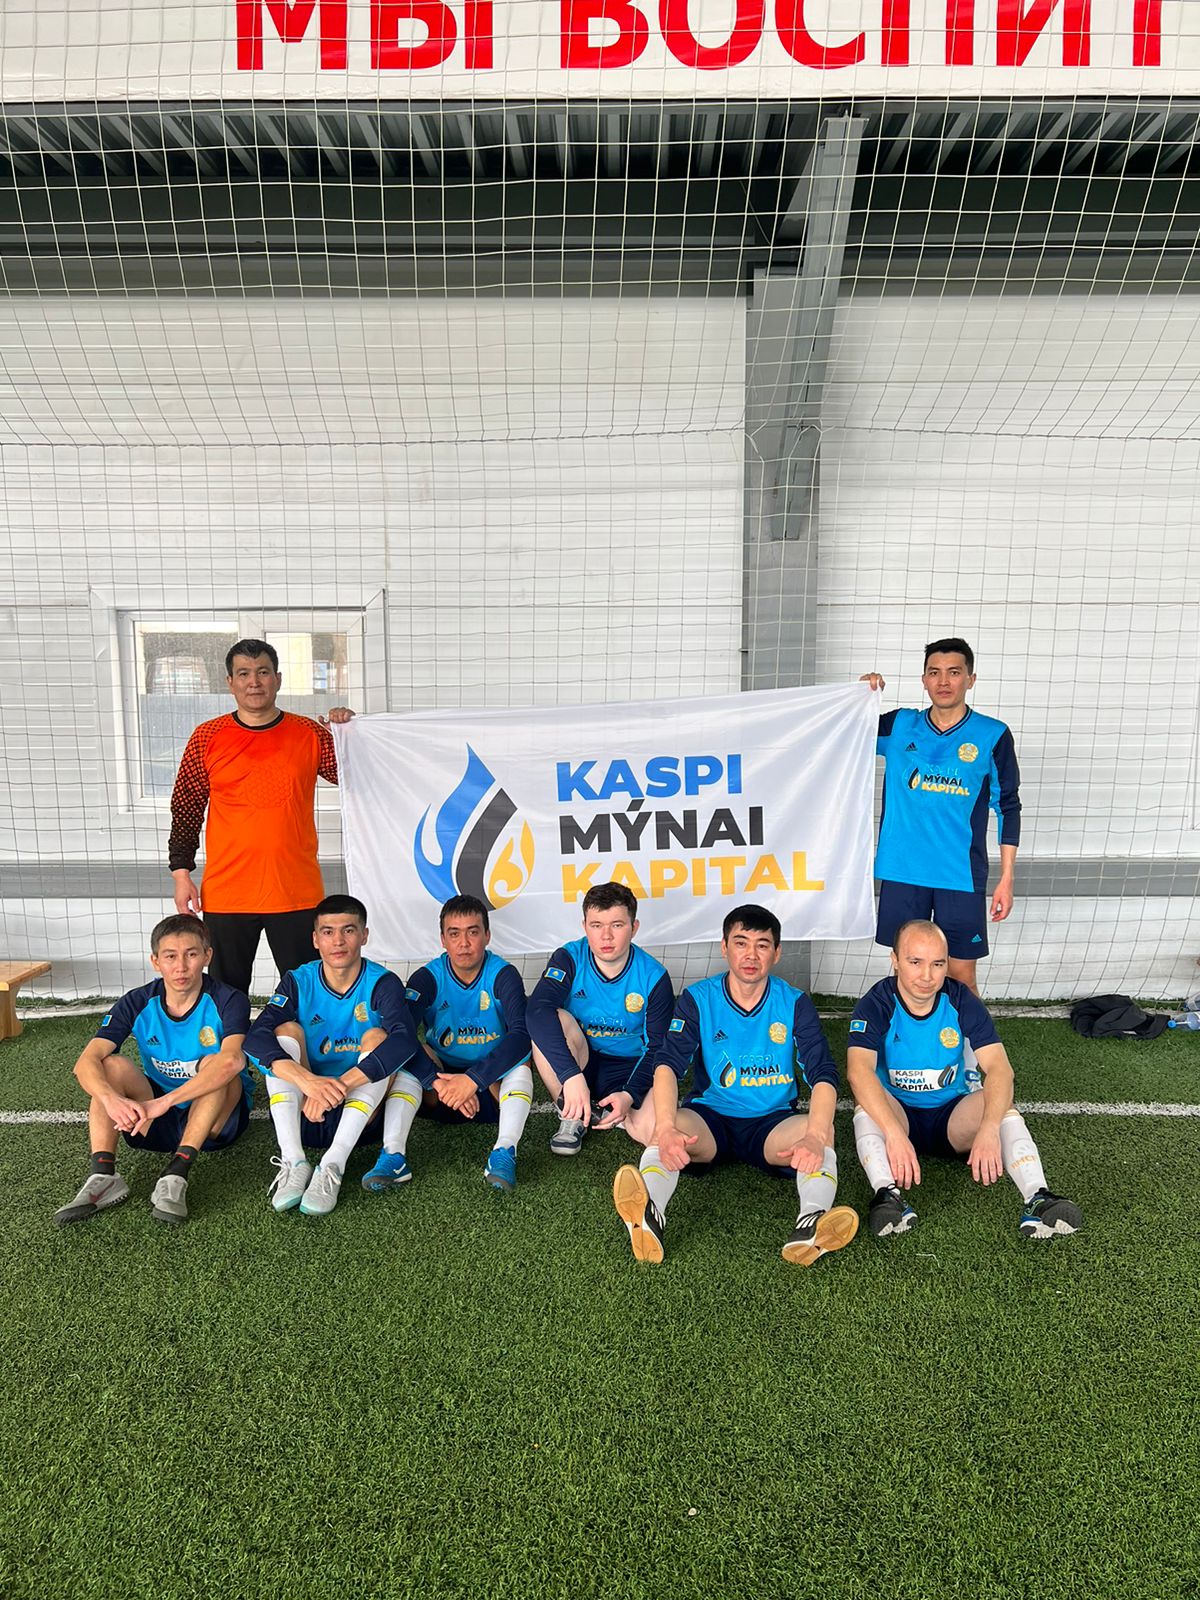 26 марта KaspiMunaiKapital приняло участие в Турнире по футболу среди нефтегазовых компаний организованный «омега спорт» .